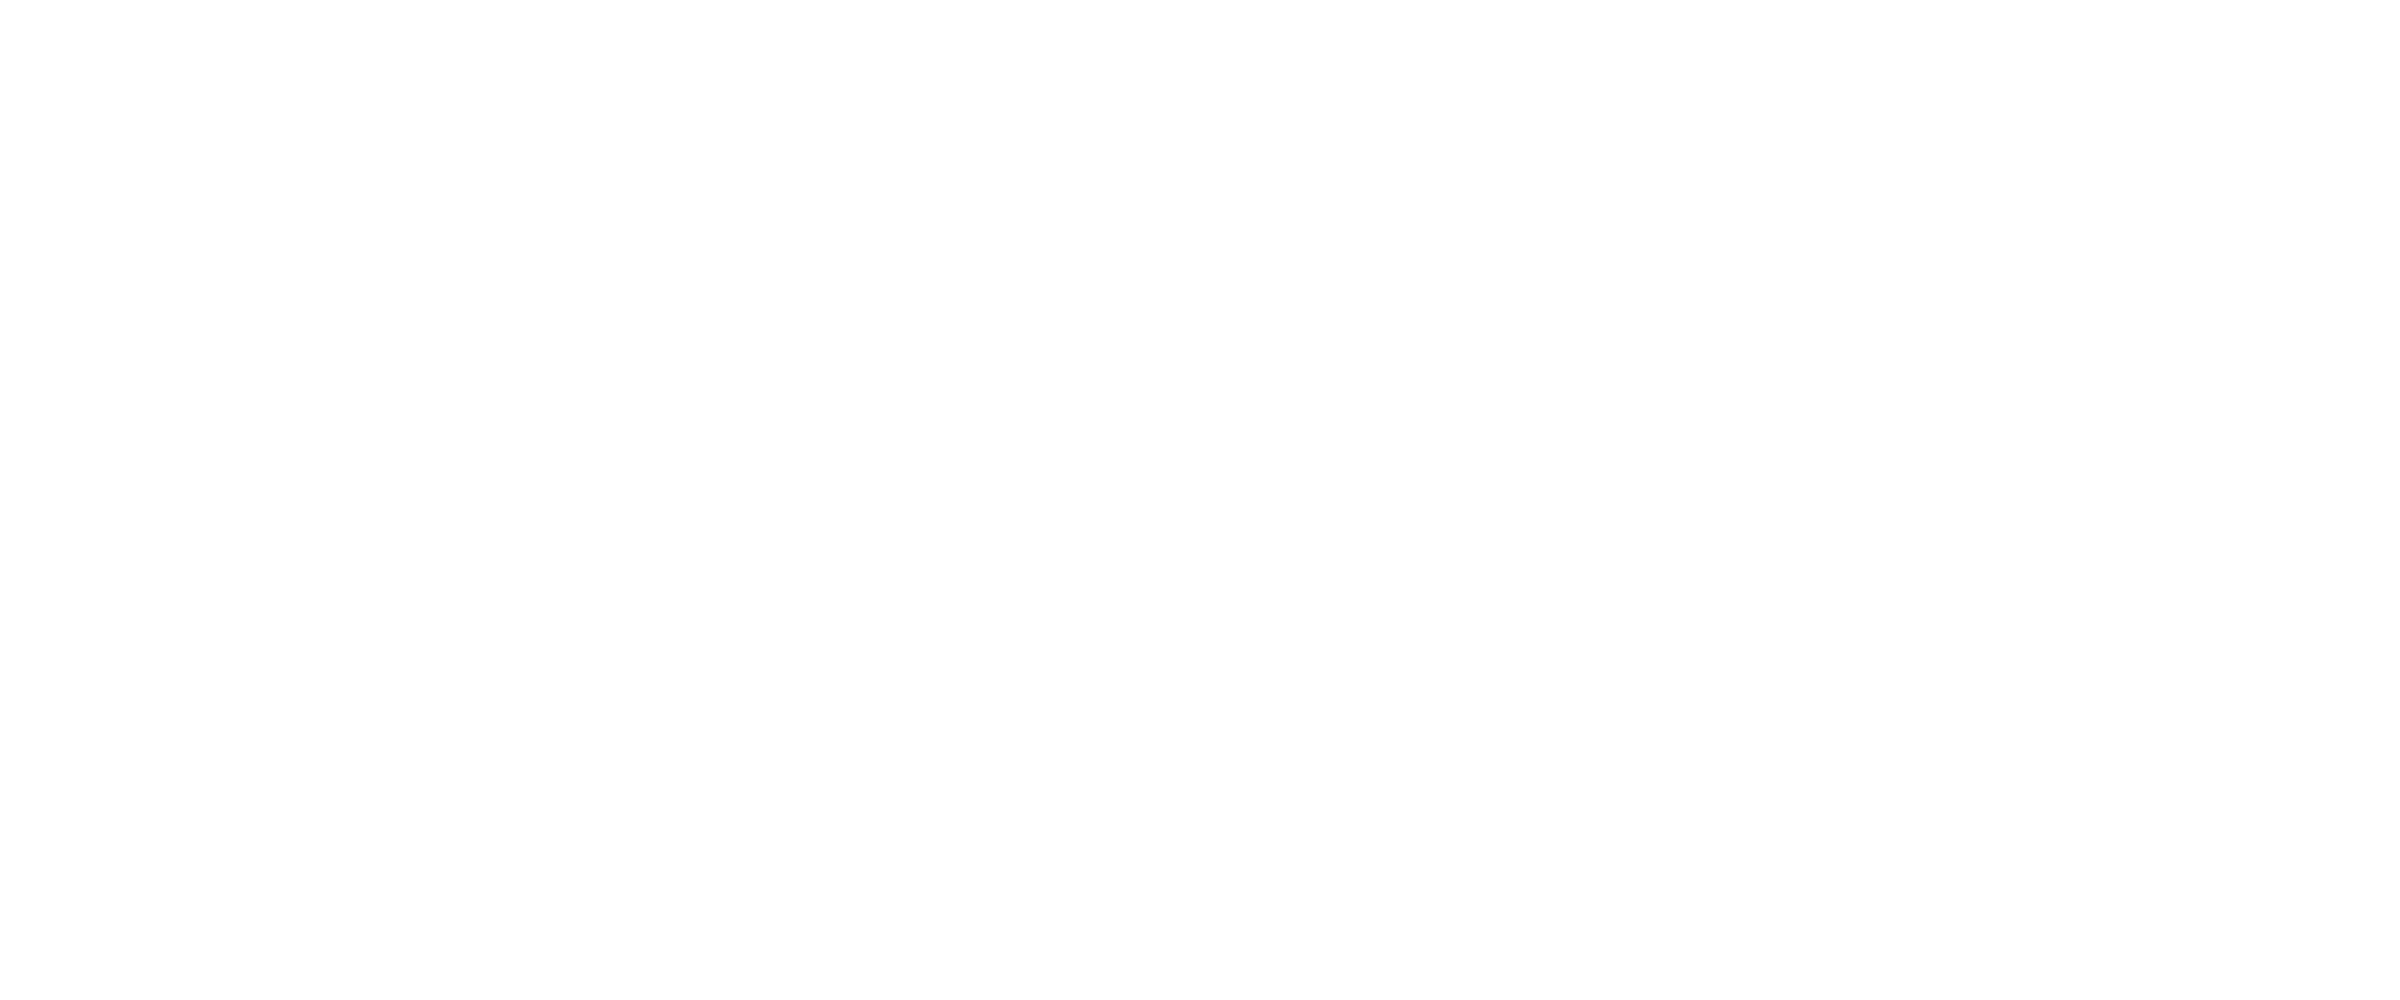 FUGUE FILM